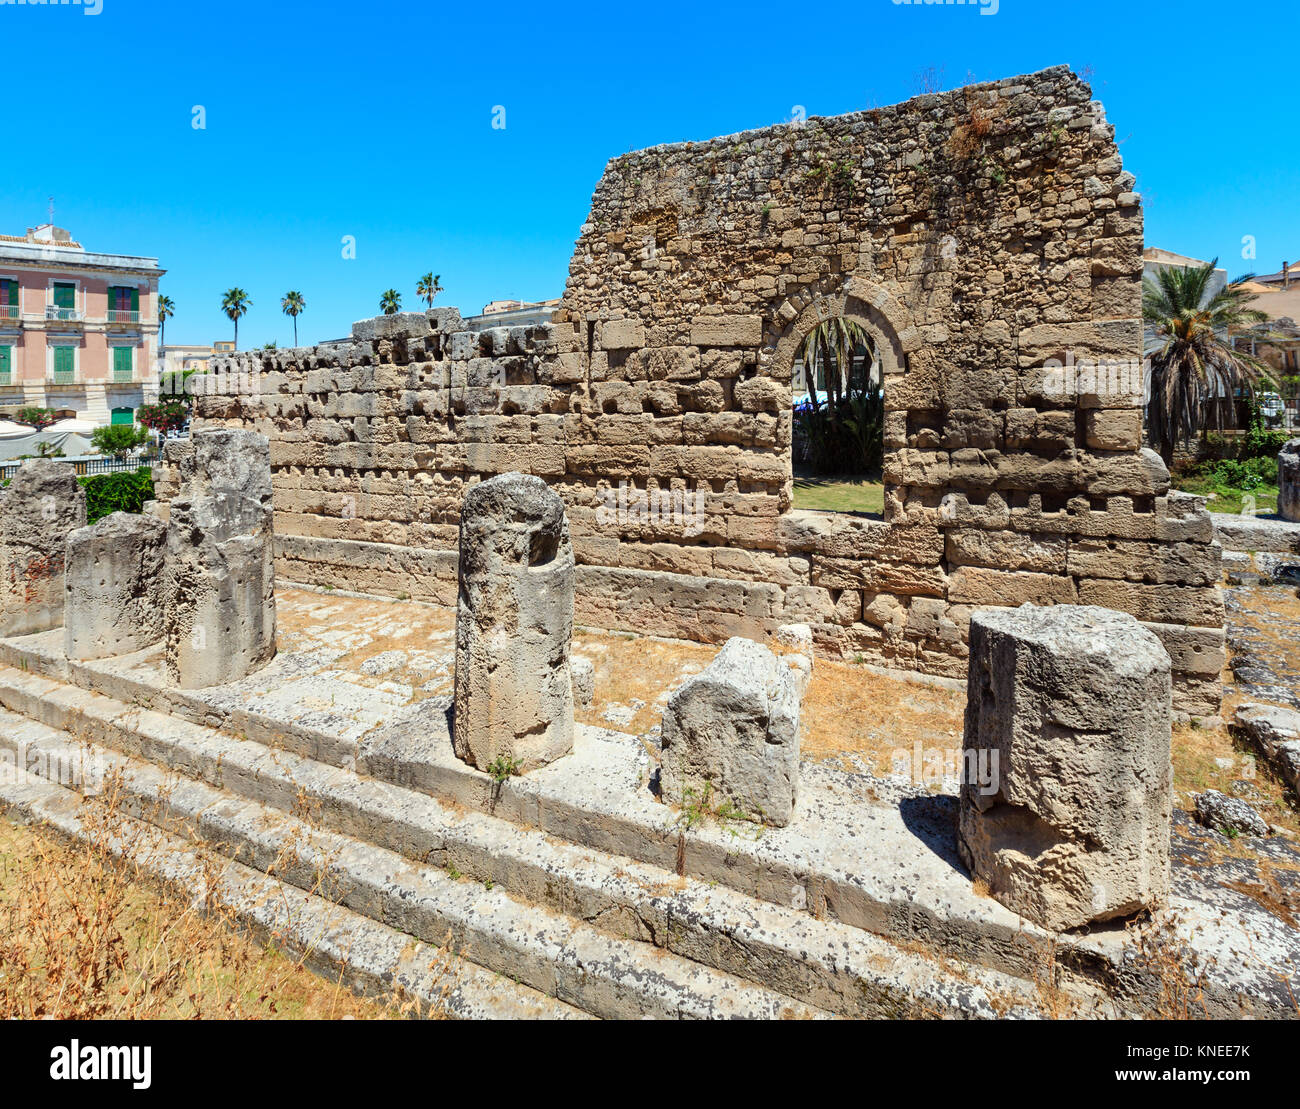 Der Tempel des Apollo Ruinen (antike griechische Denkmäler auf der Insel Ortygia) in Syrakus, Sizilien, Italien. Schöne Reise Foto von Sizilien. Stockfoto